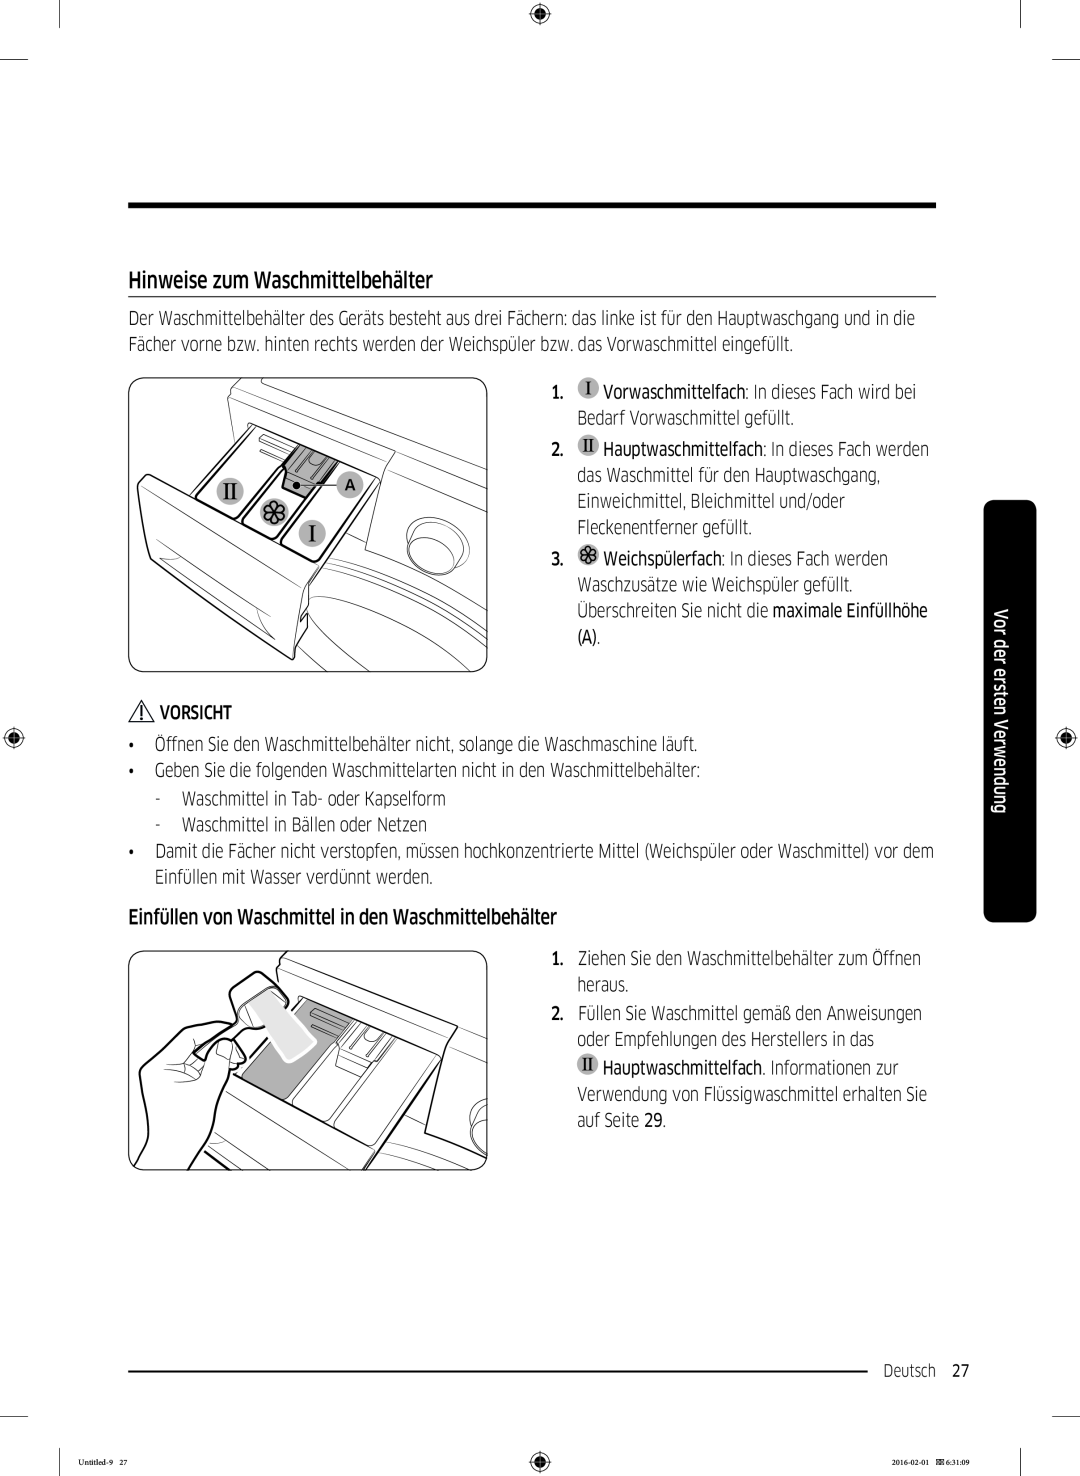 Samsung WW70K5400WW/EG manual Hinweise zum Waschmittelbehälter, Einfüllen von Waschmittel in den Waschmittelbehälter 